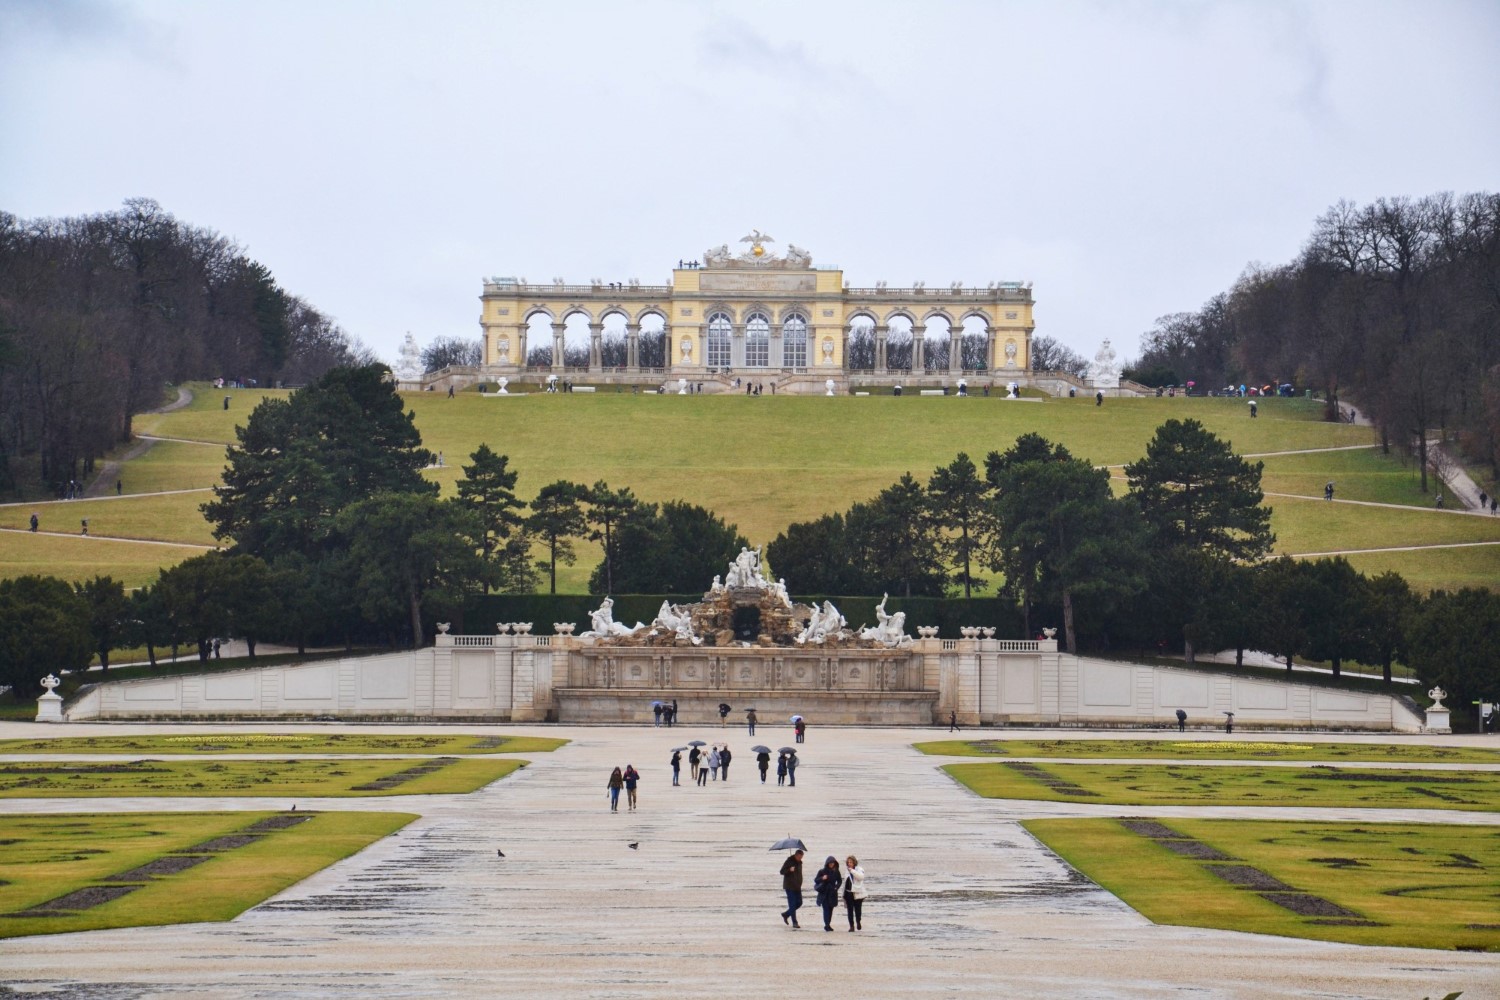 weekend majowy, Wiedeń, Austria - bele kaj, blog podróżniczy po śląsku